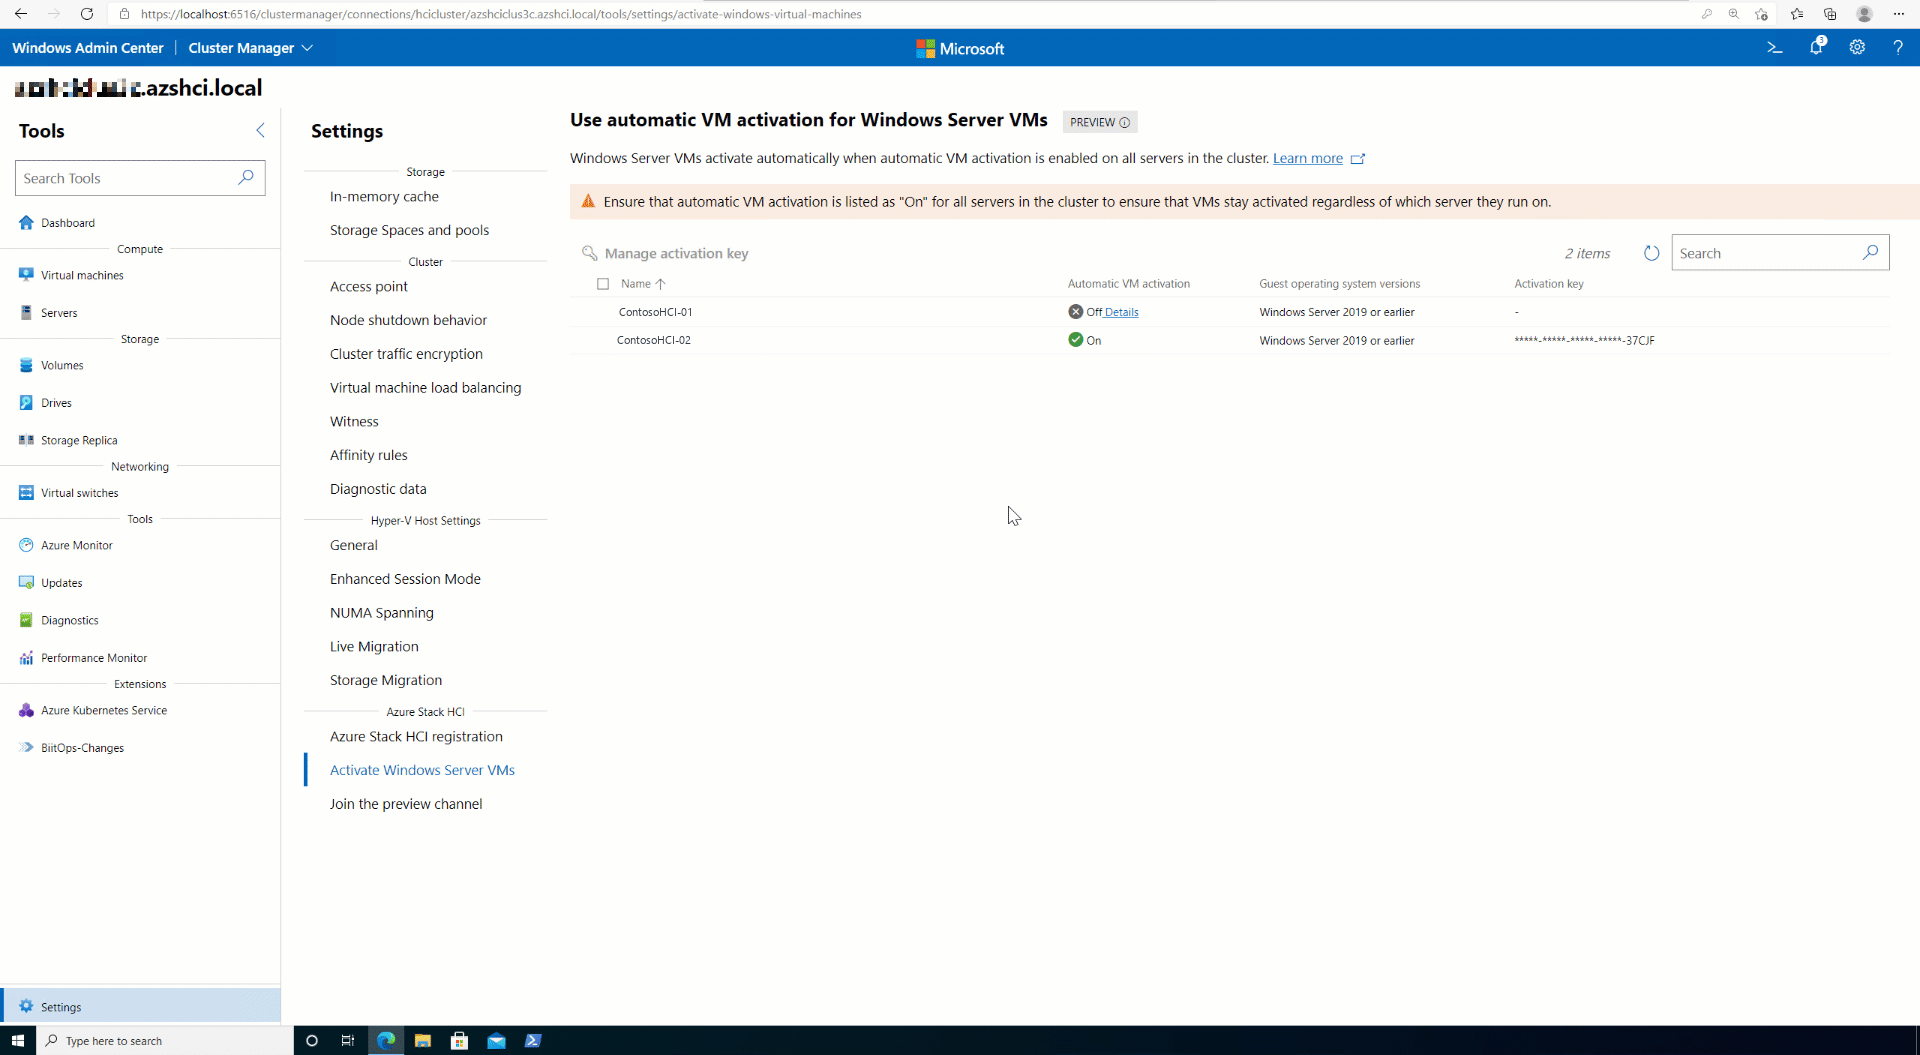 Kurze Veranschaulichung zum Ändern oder Hinzufügen von Schlüsseln im Windows Admin Center